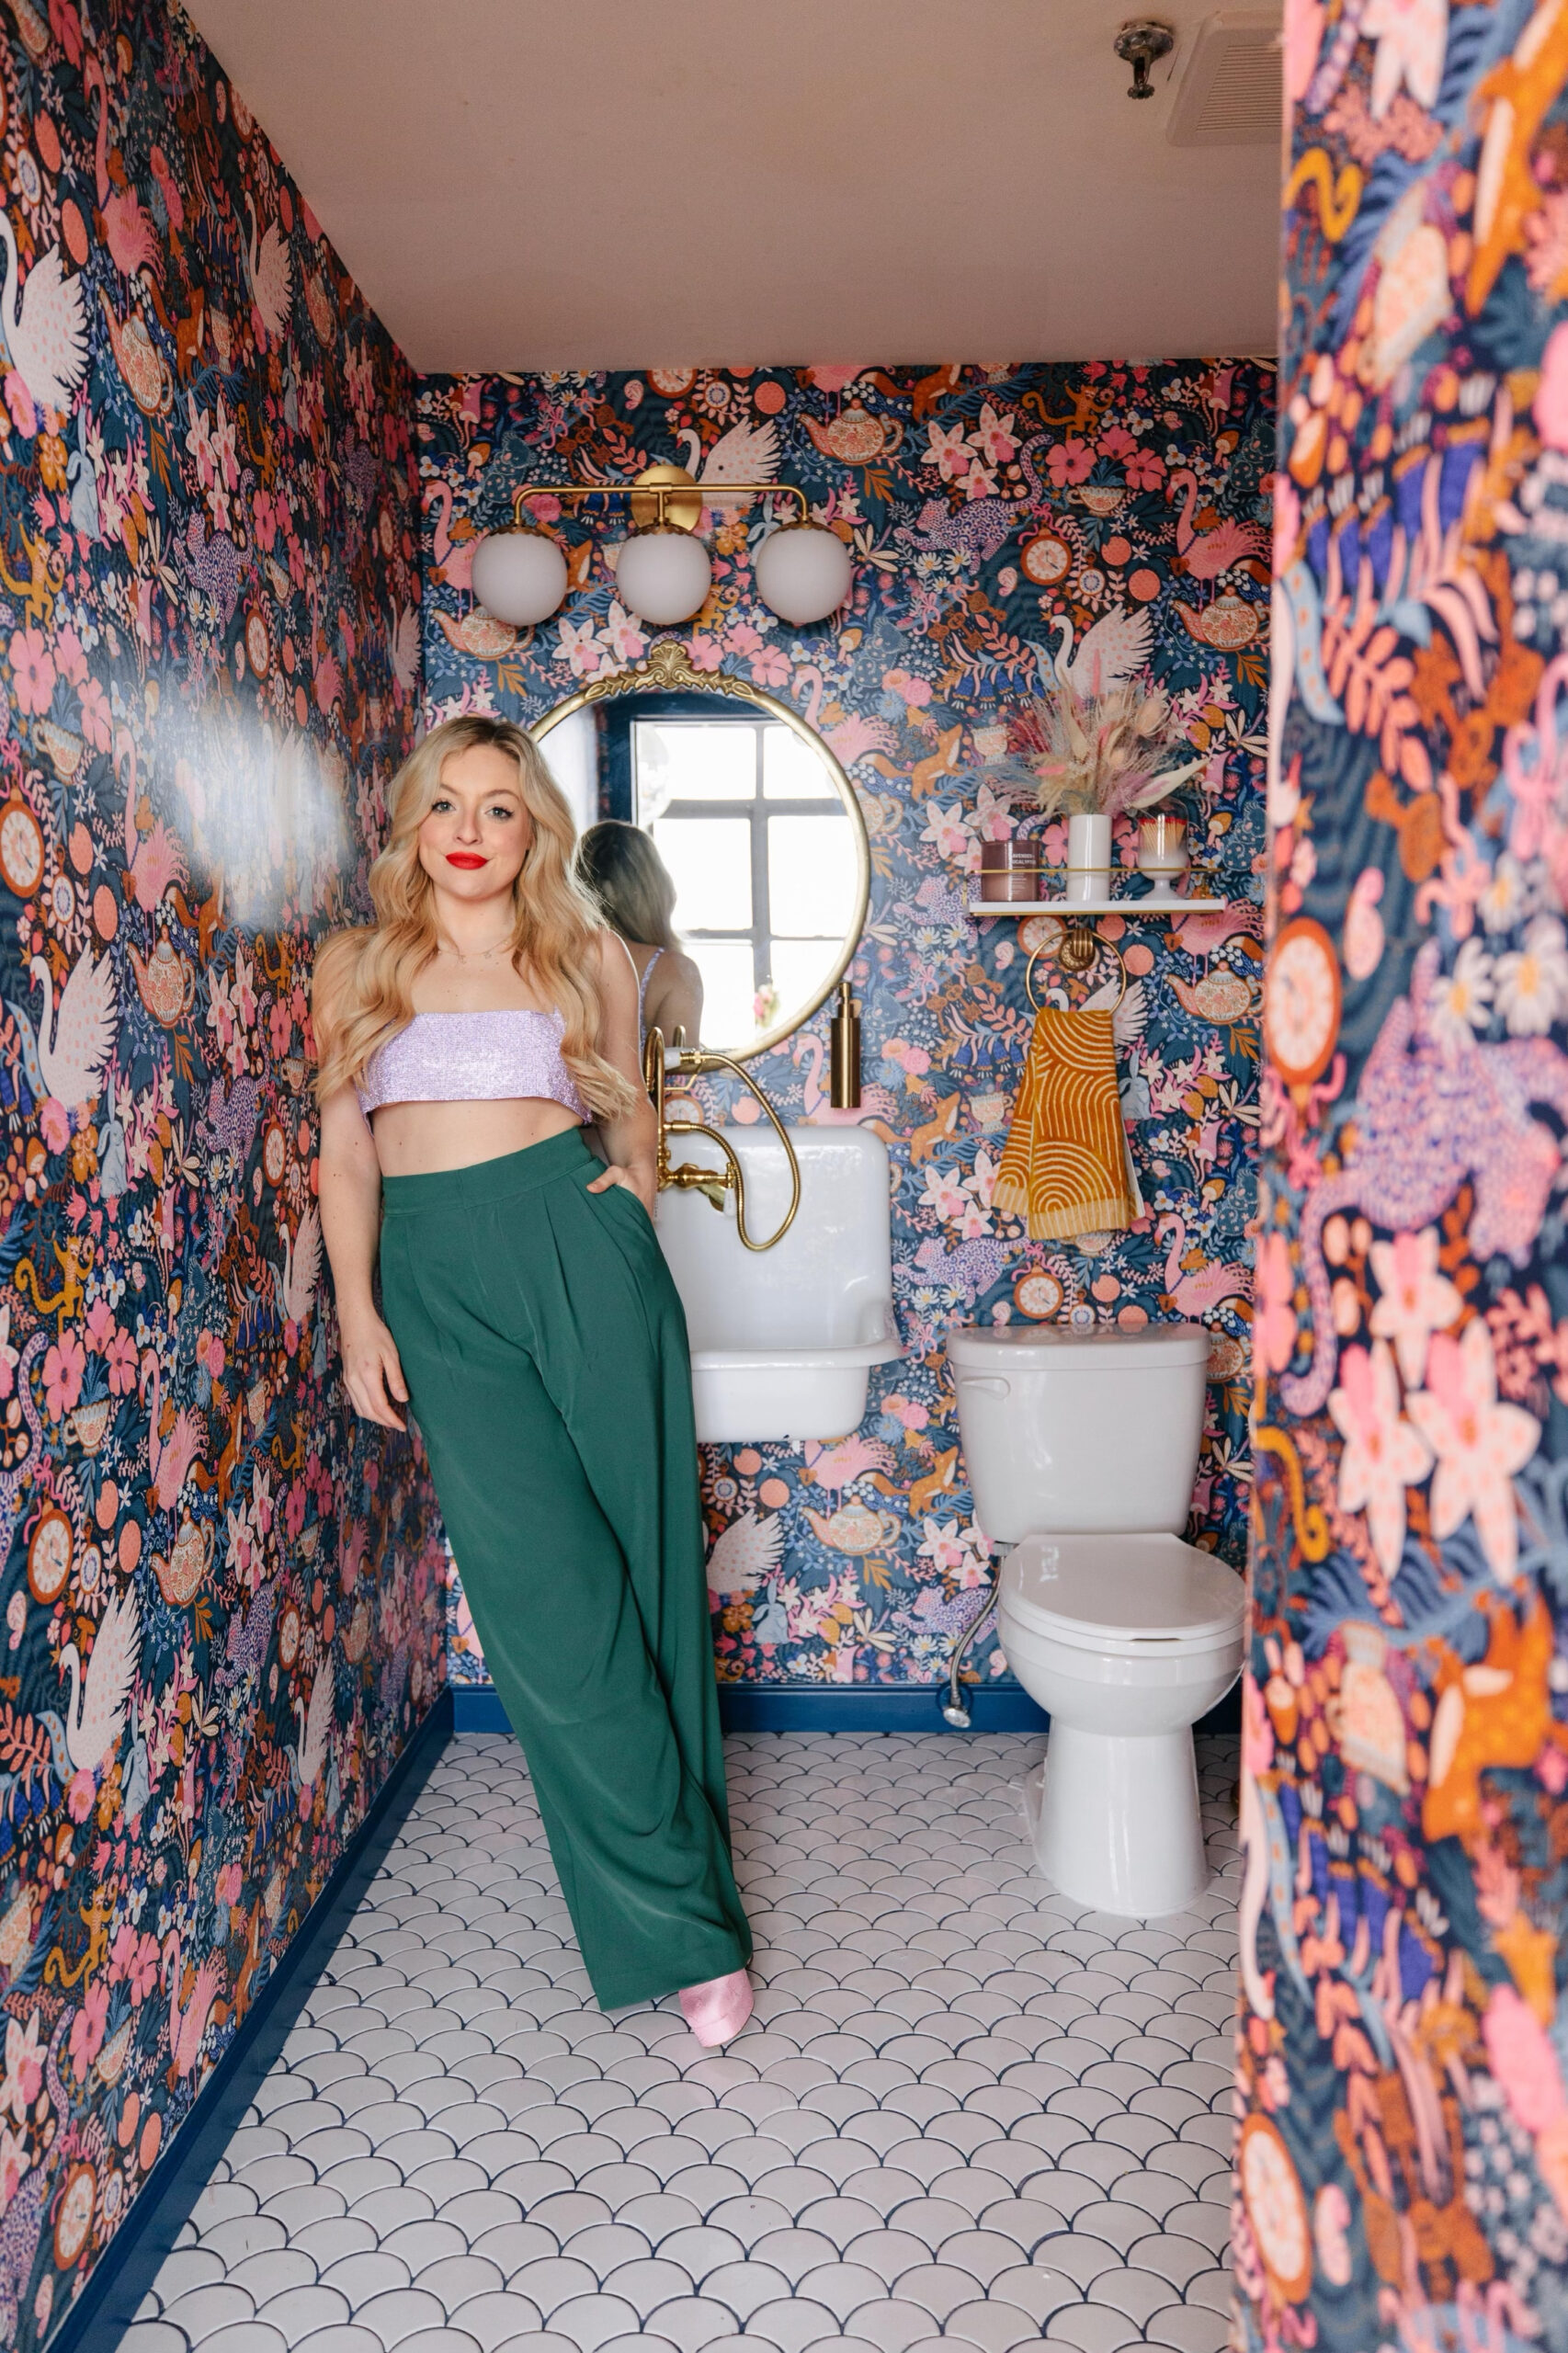 Bathroom Renovation Reveal: The Wonderland Washroom!